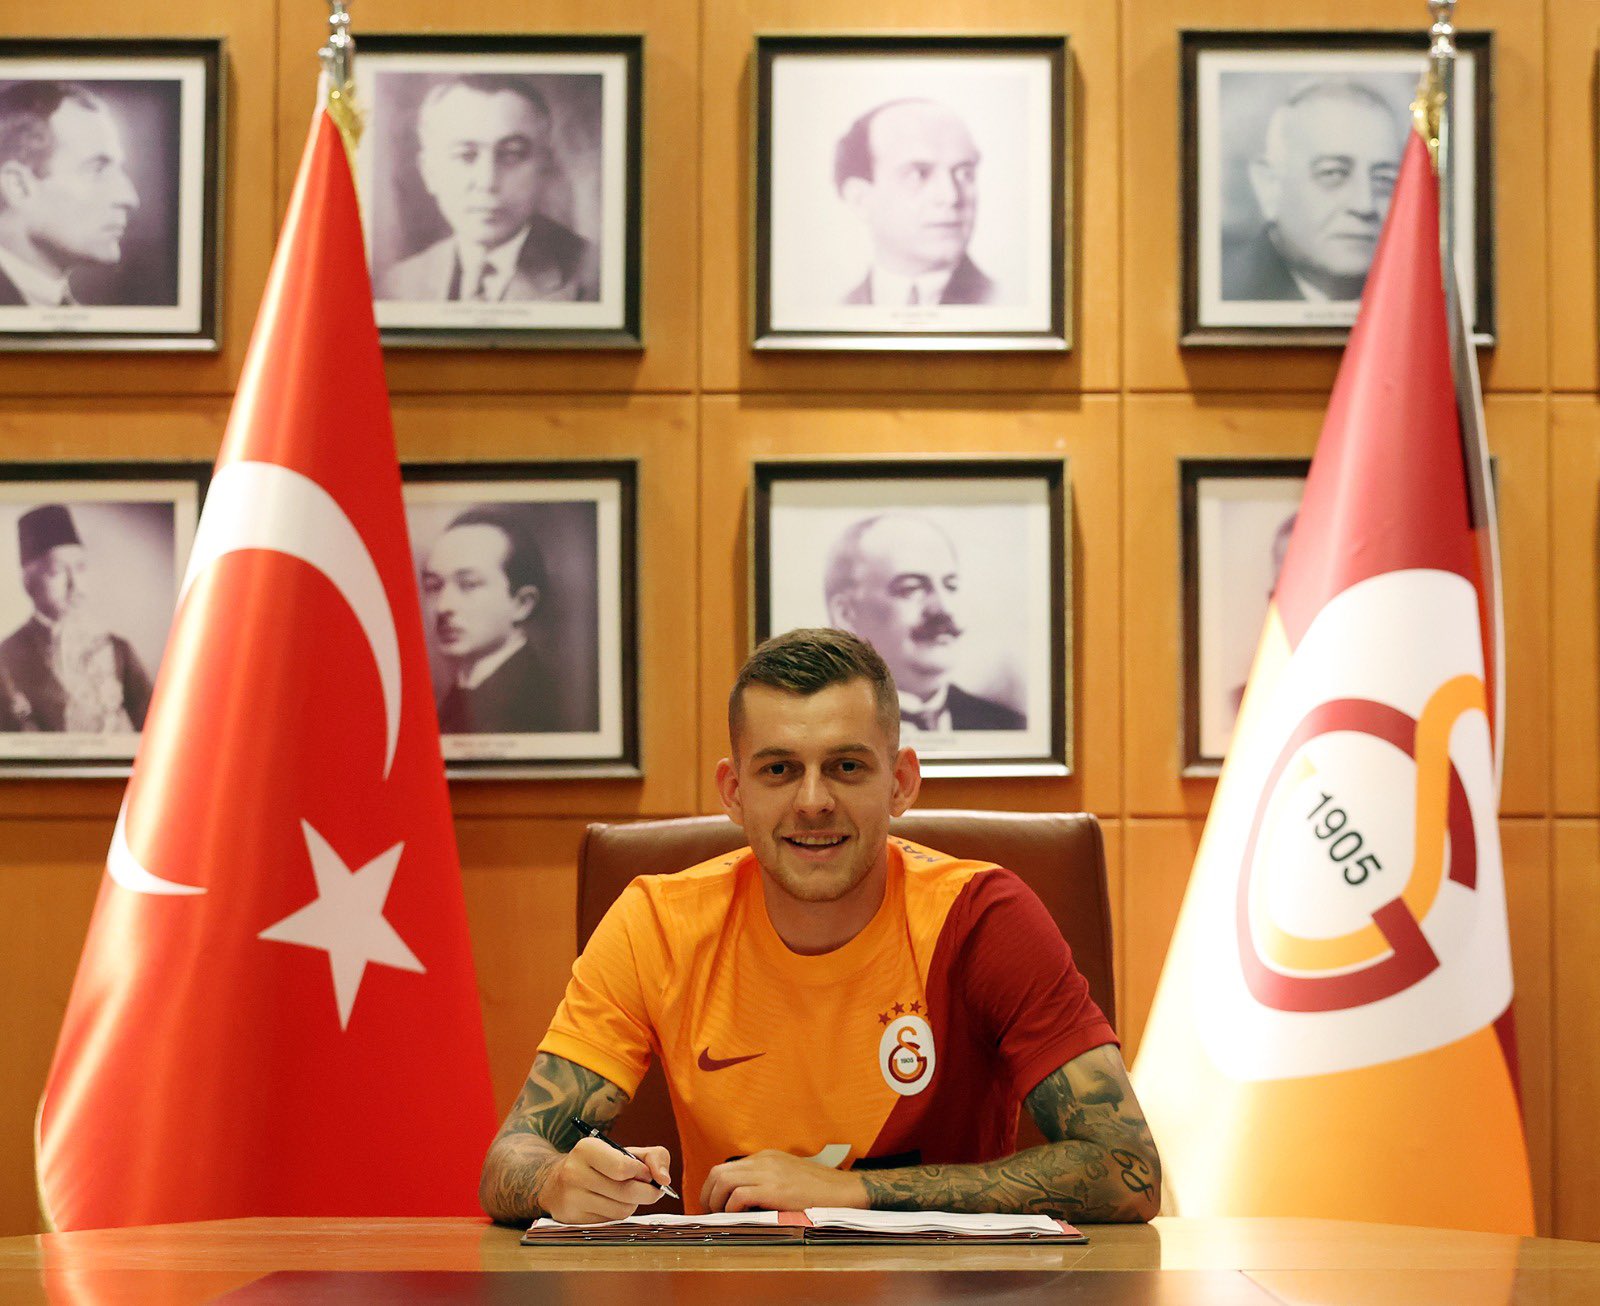 Alexandru Cicâldău, primele imagini în tricoul lui Galatasaray / Twitter